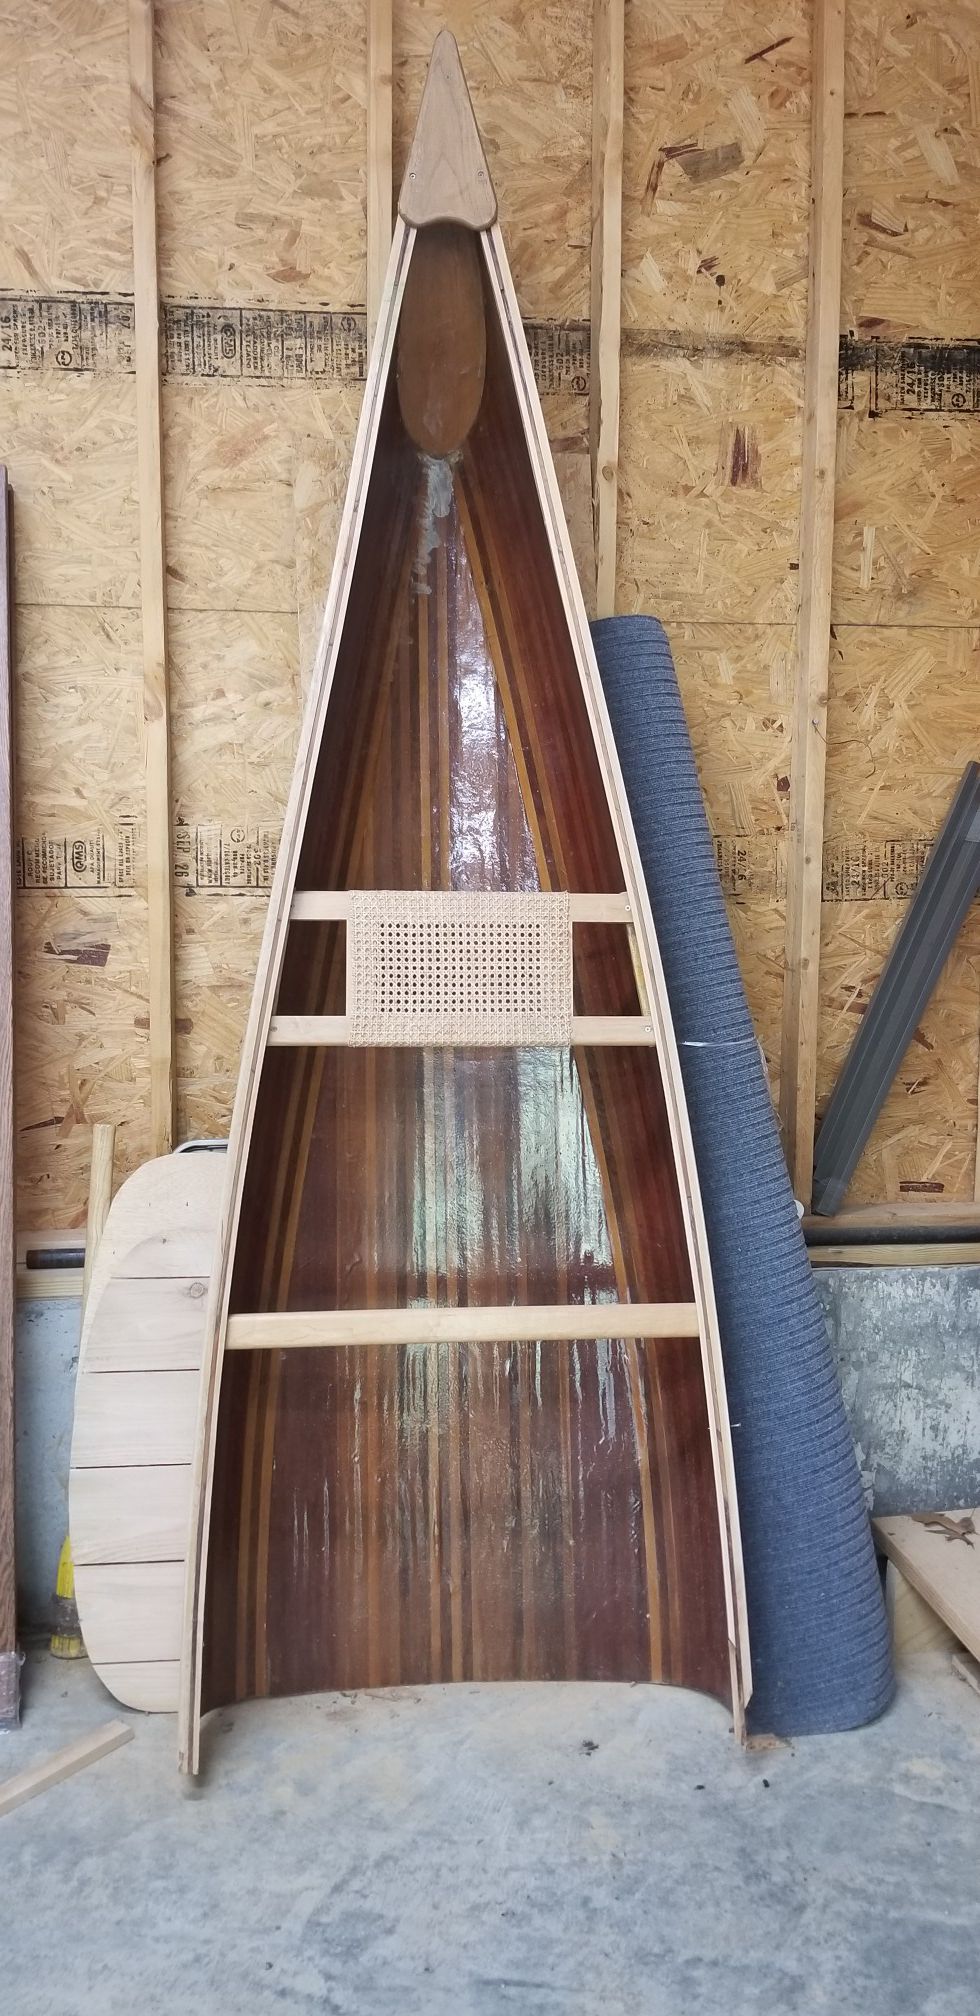 Photo cedar strip canoe, cut in half